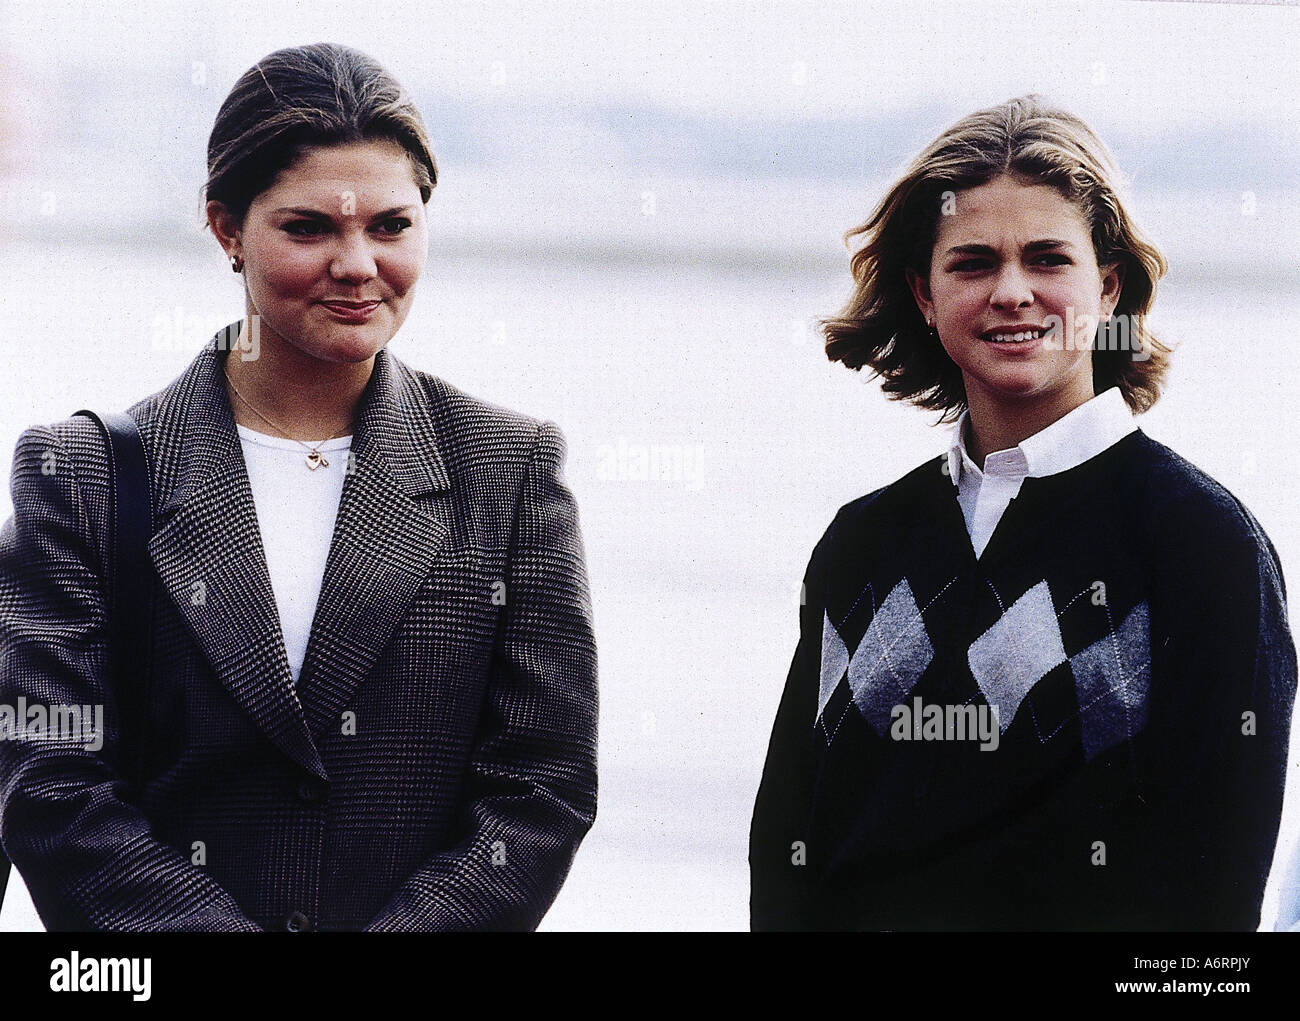 * Victoria, 14.7.1977, la Princesse de Suède depuis le 1.1.1980, avec sa sœur Madeleine, Munich, 30.10.1995, Bernadotte, Germa Banque D'Images